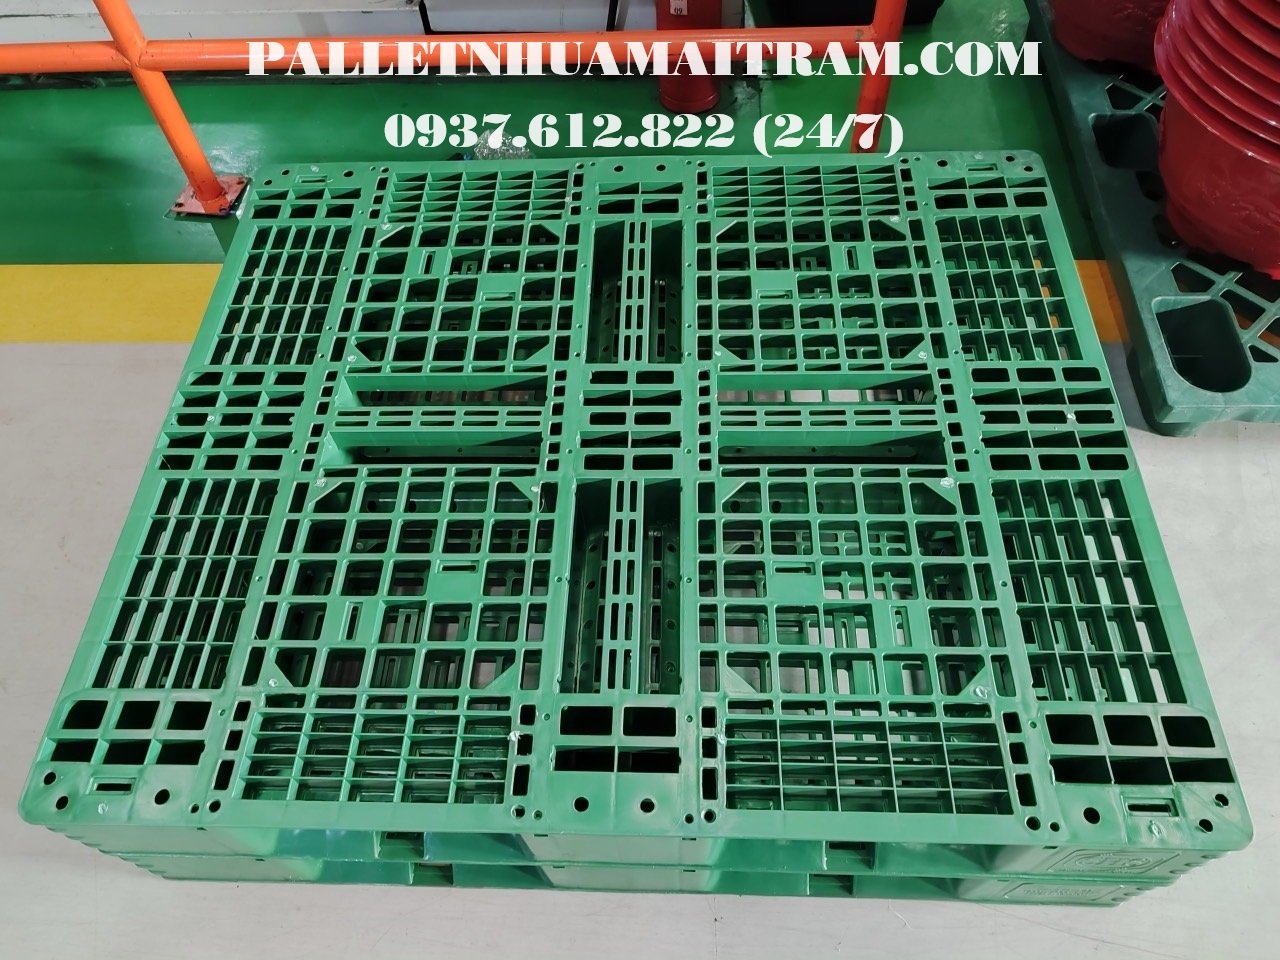 Pallet Nhựa Đắk Nông giá rẻ cạnh tranh, liên hệ 0937612822 (24/7)